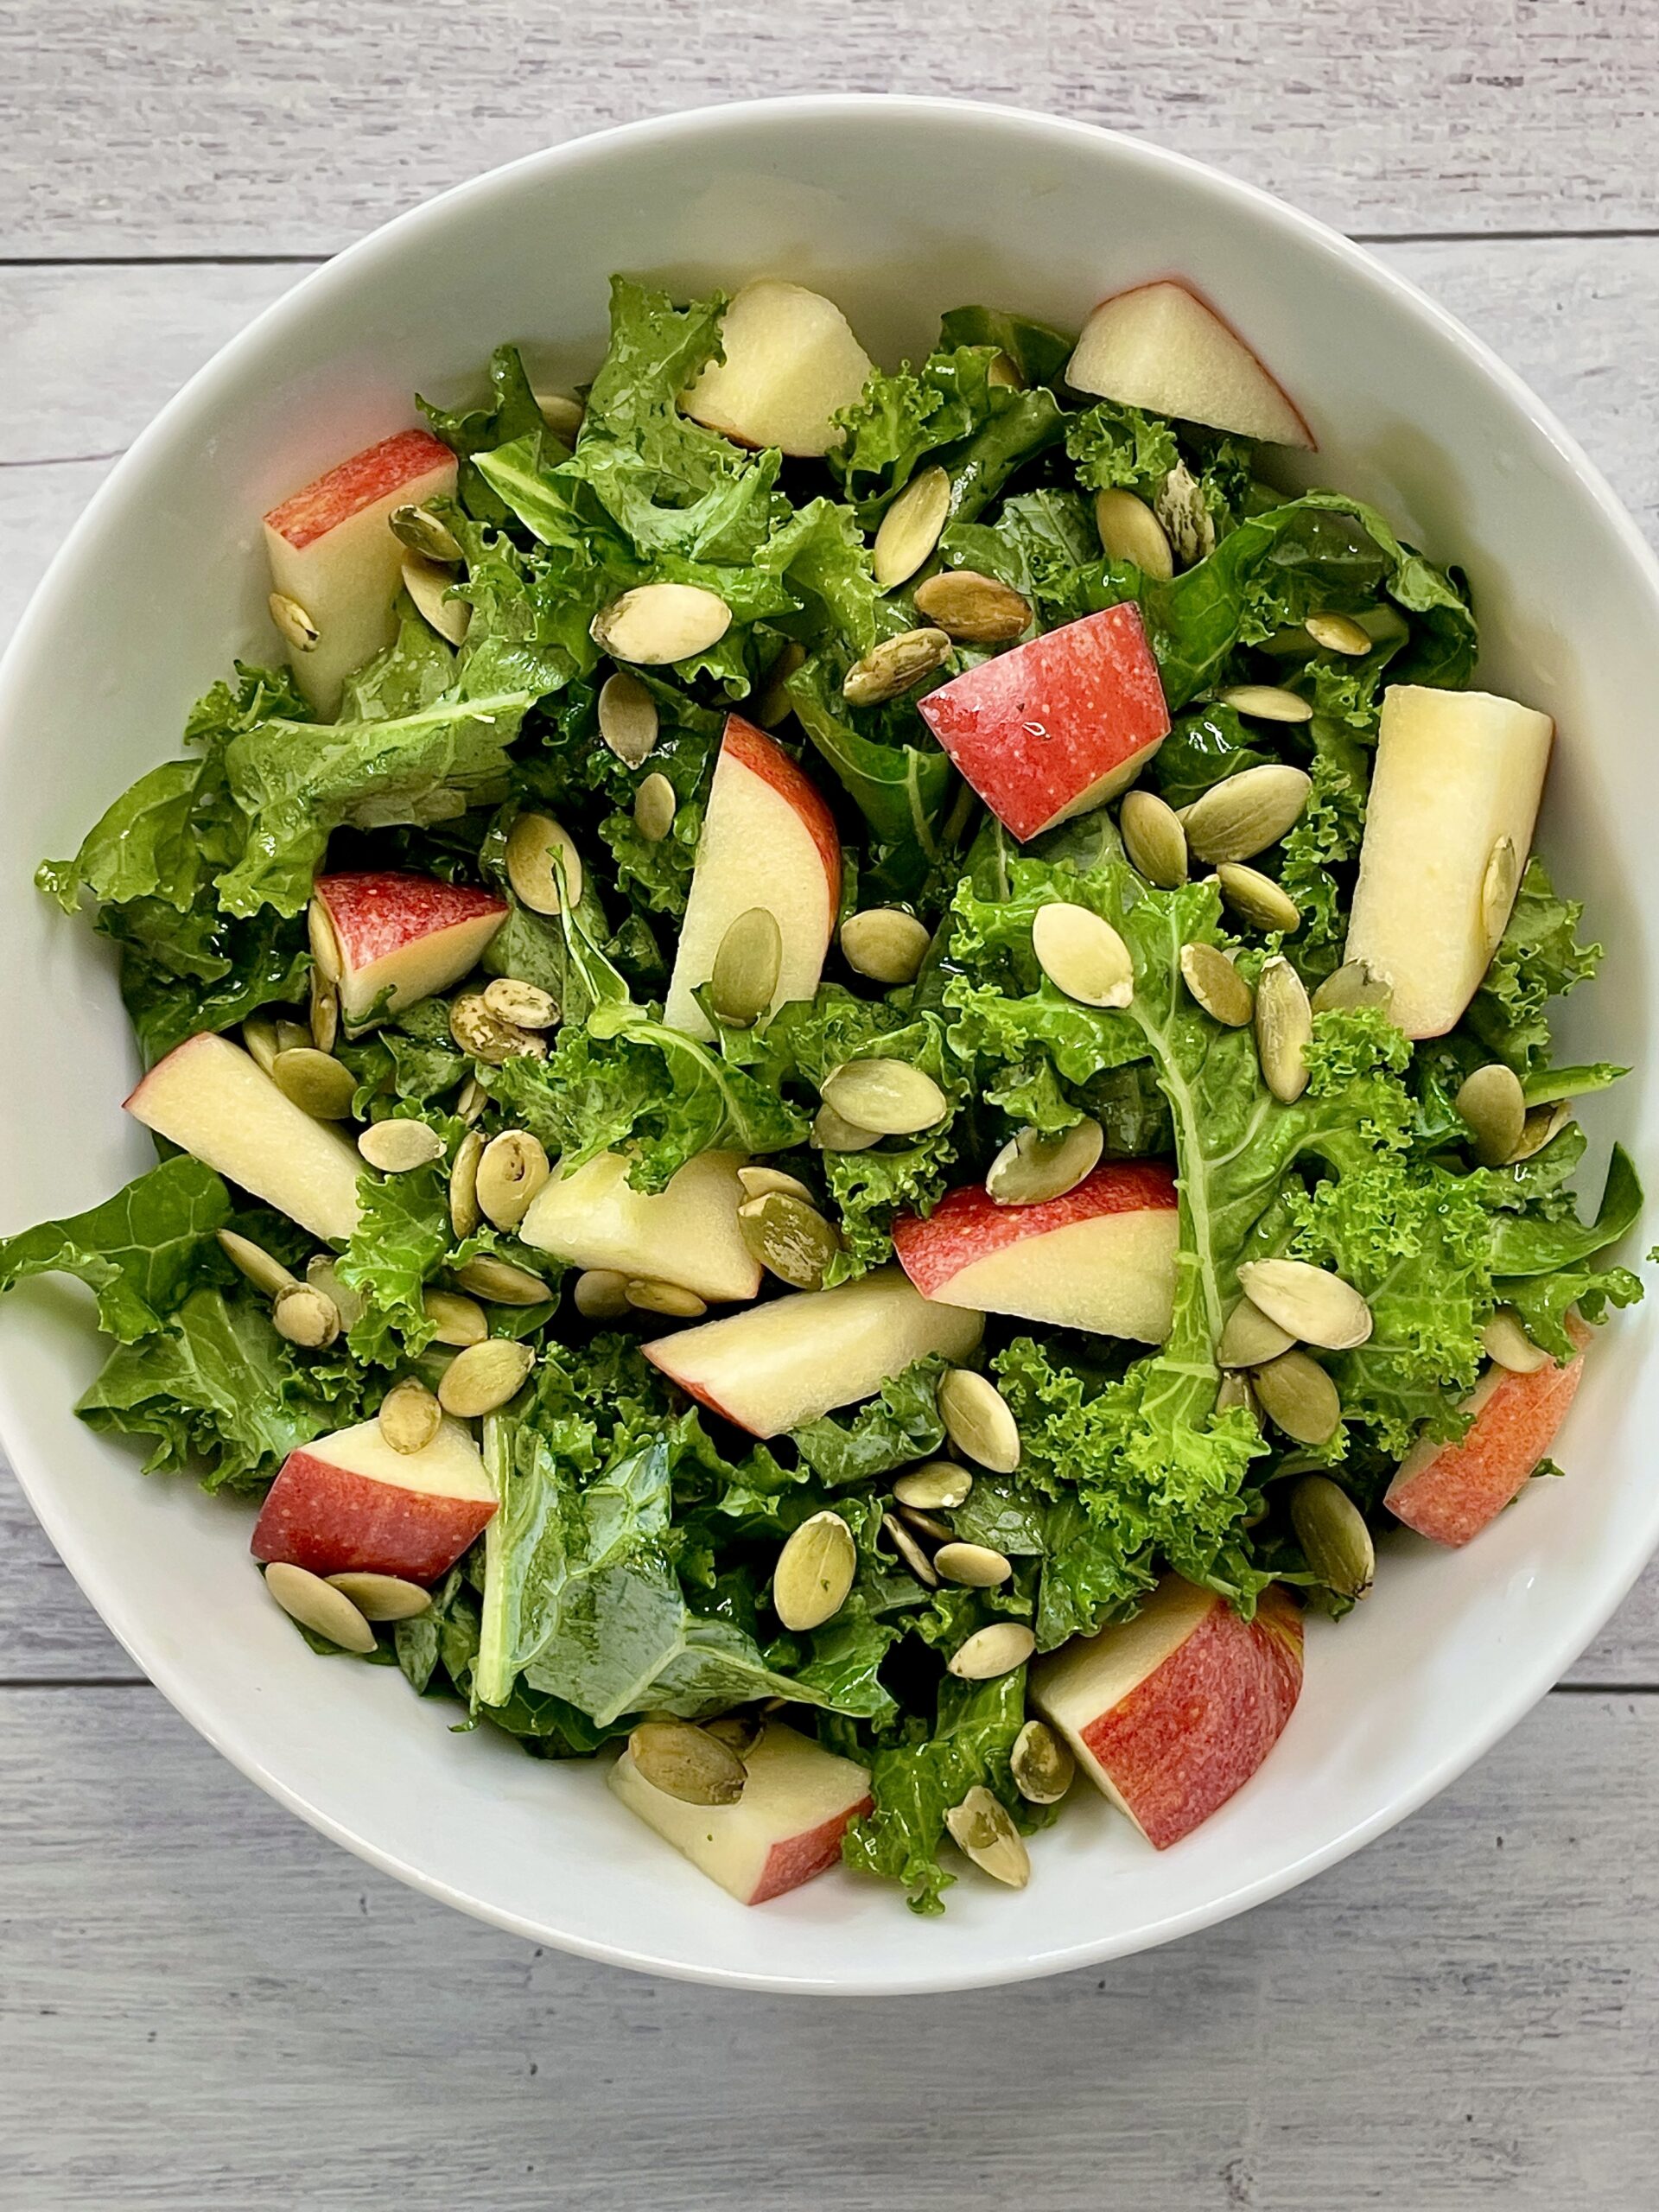 Tahini-Lemon Kale Salad with Apples